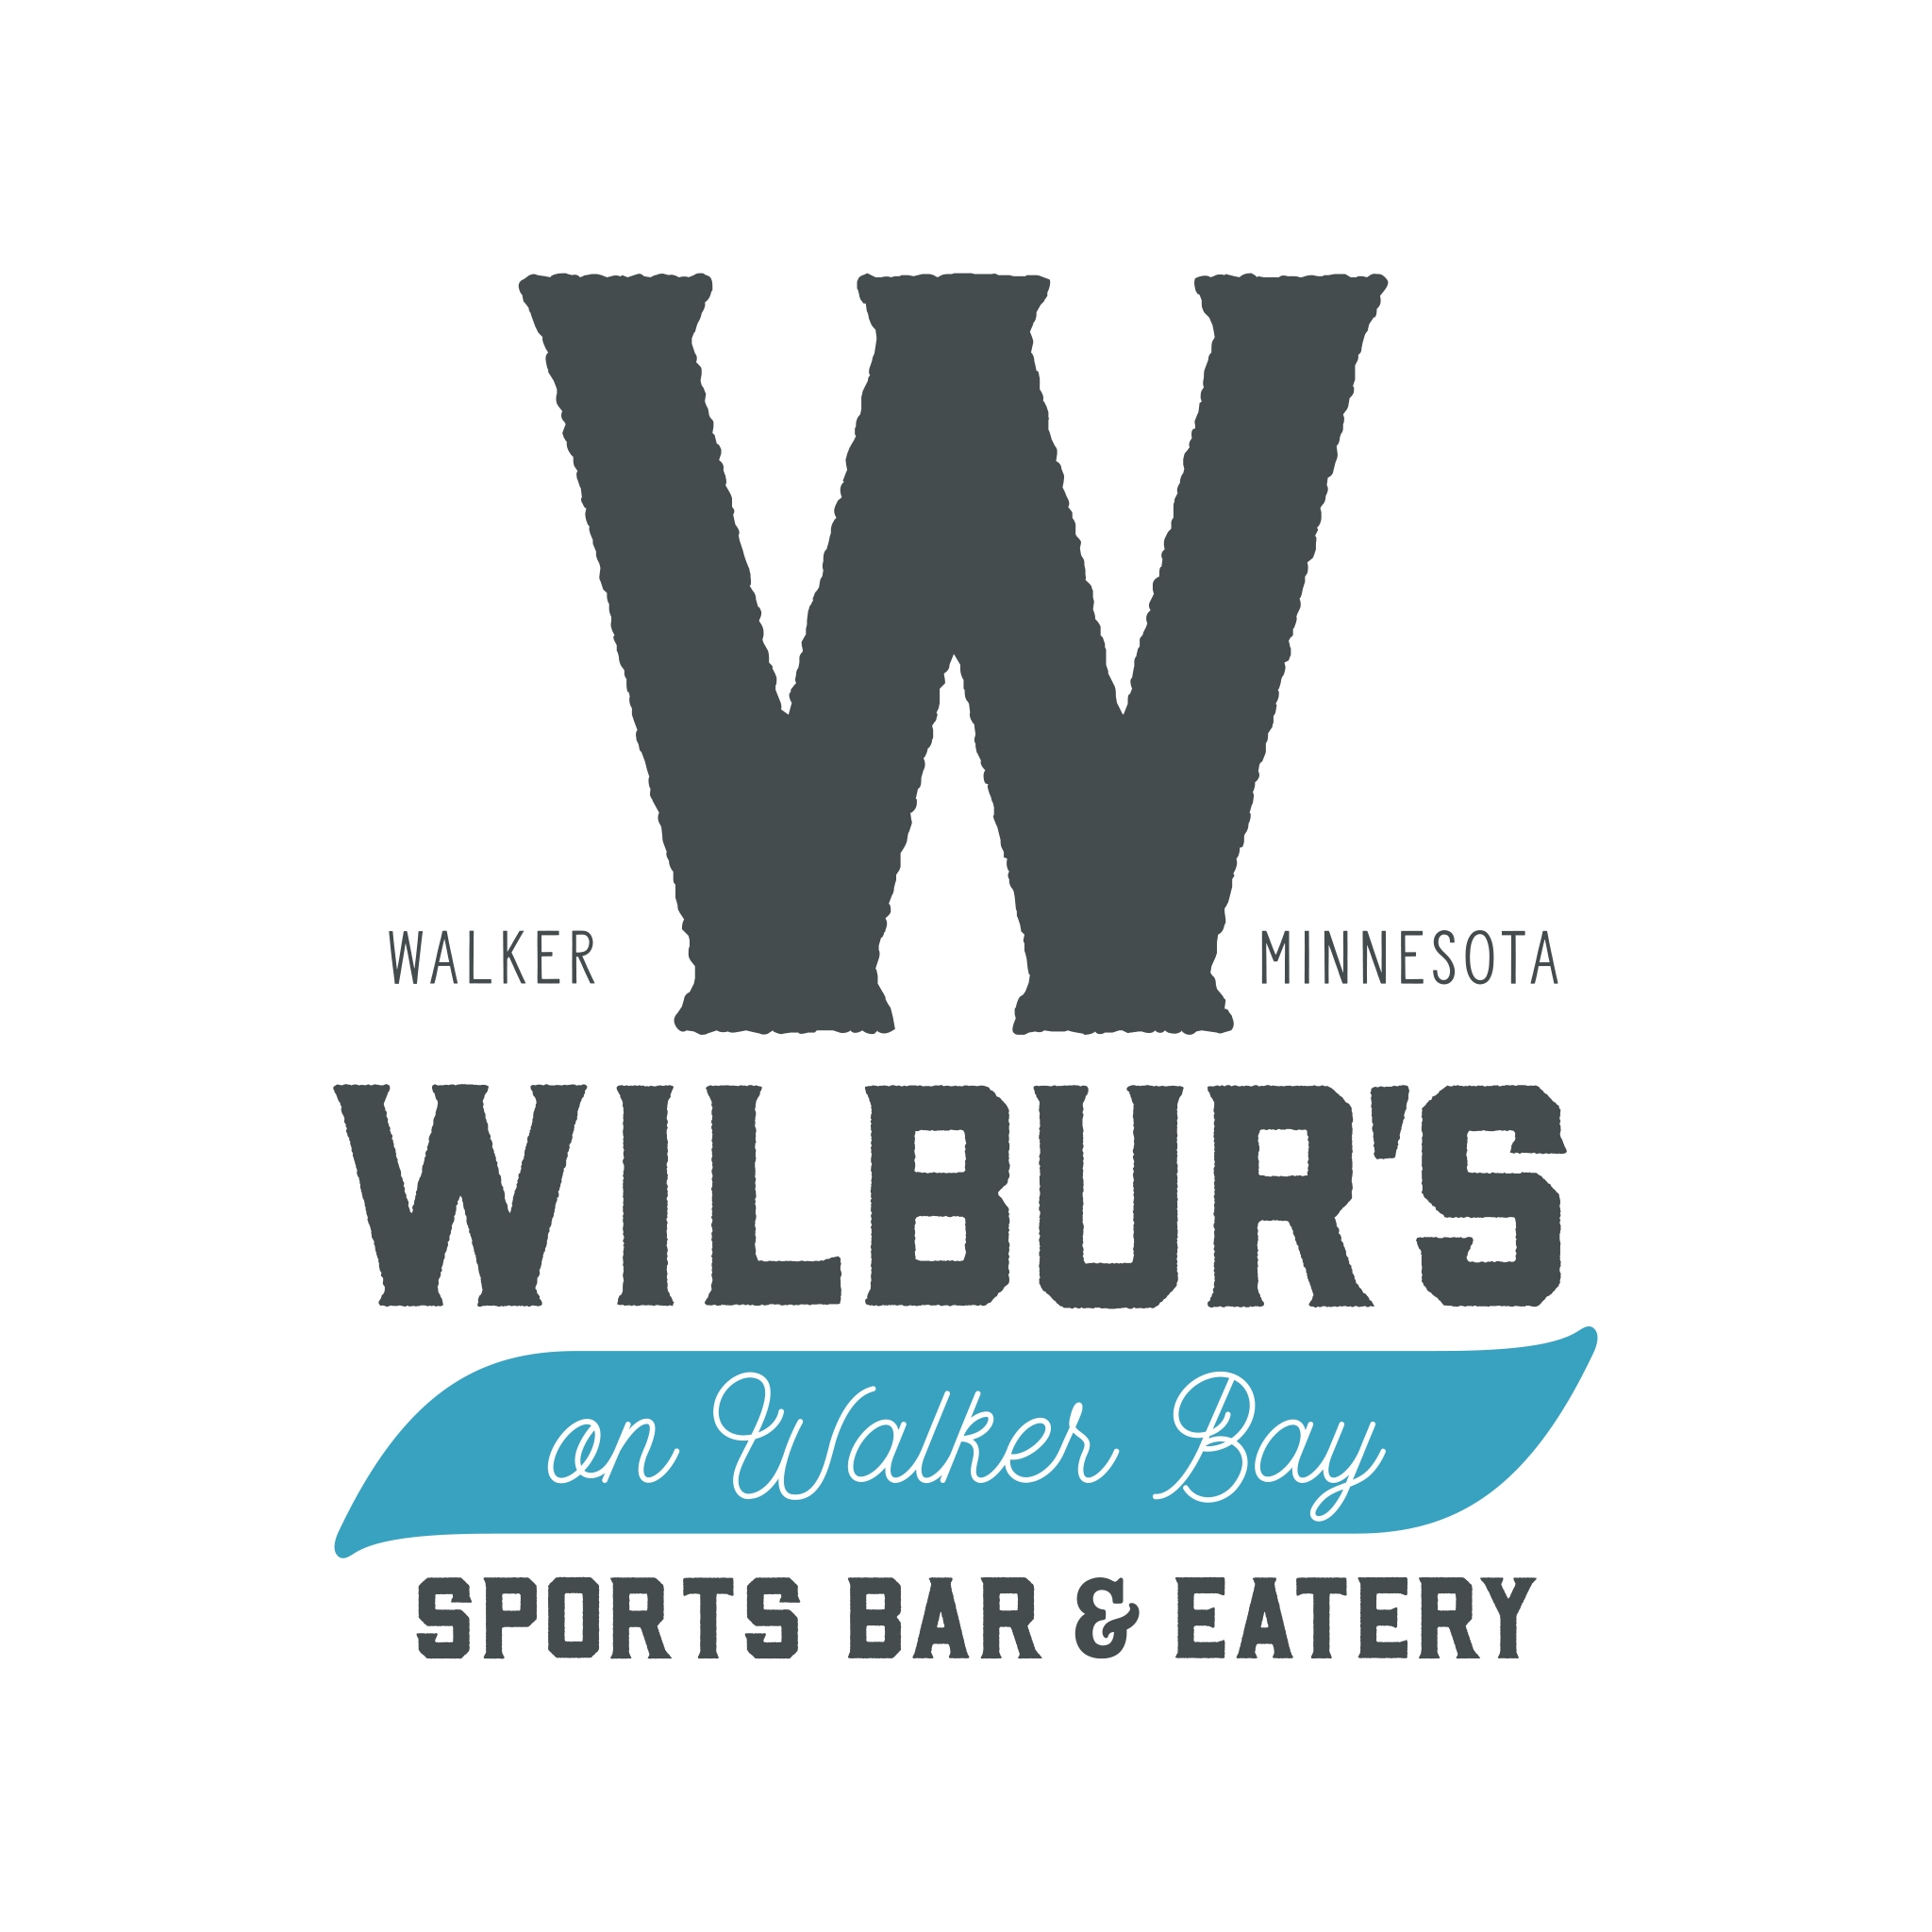 Wilbur's on Walker Bay